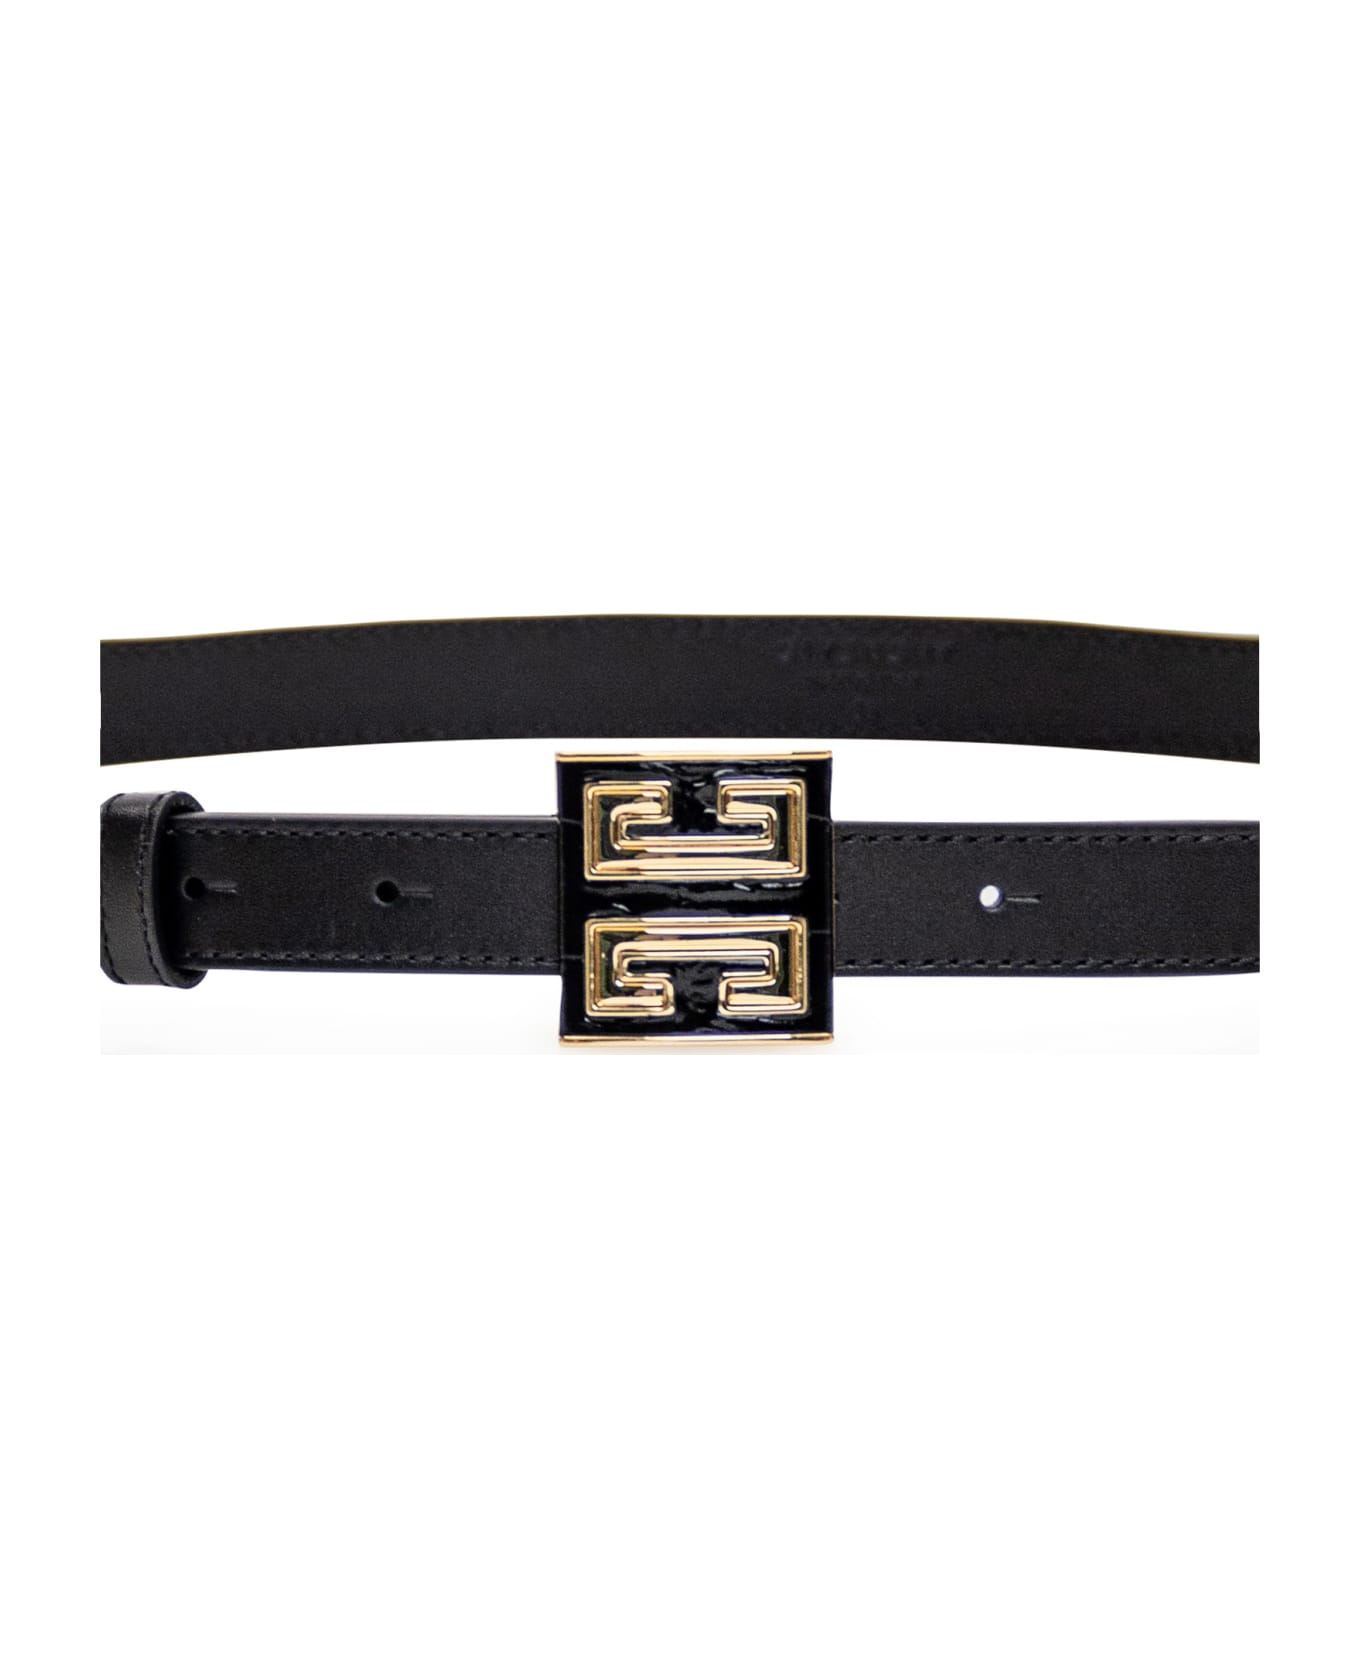 Givenchy 4g Buckle Belt - Black